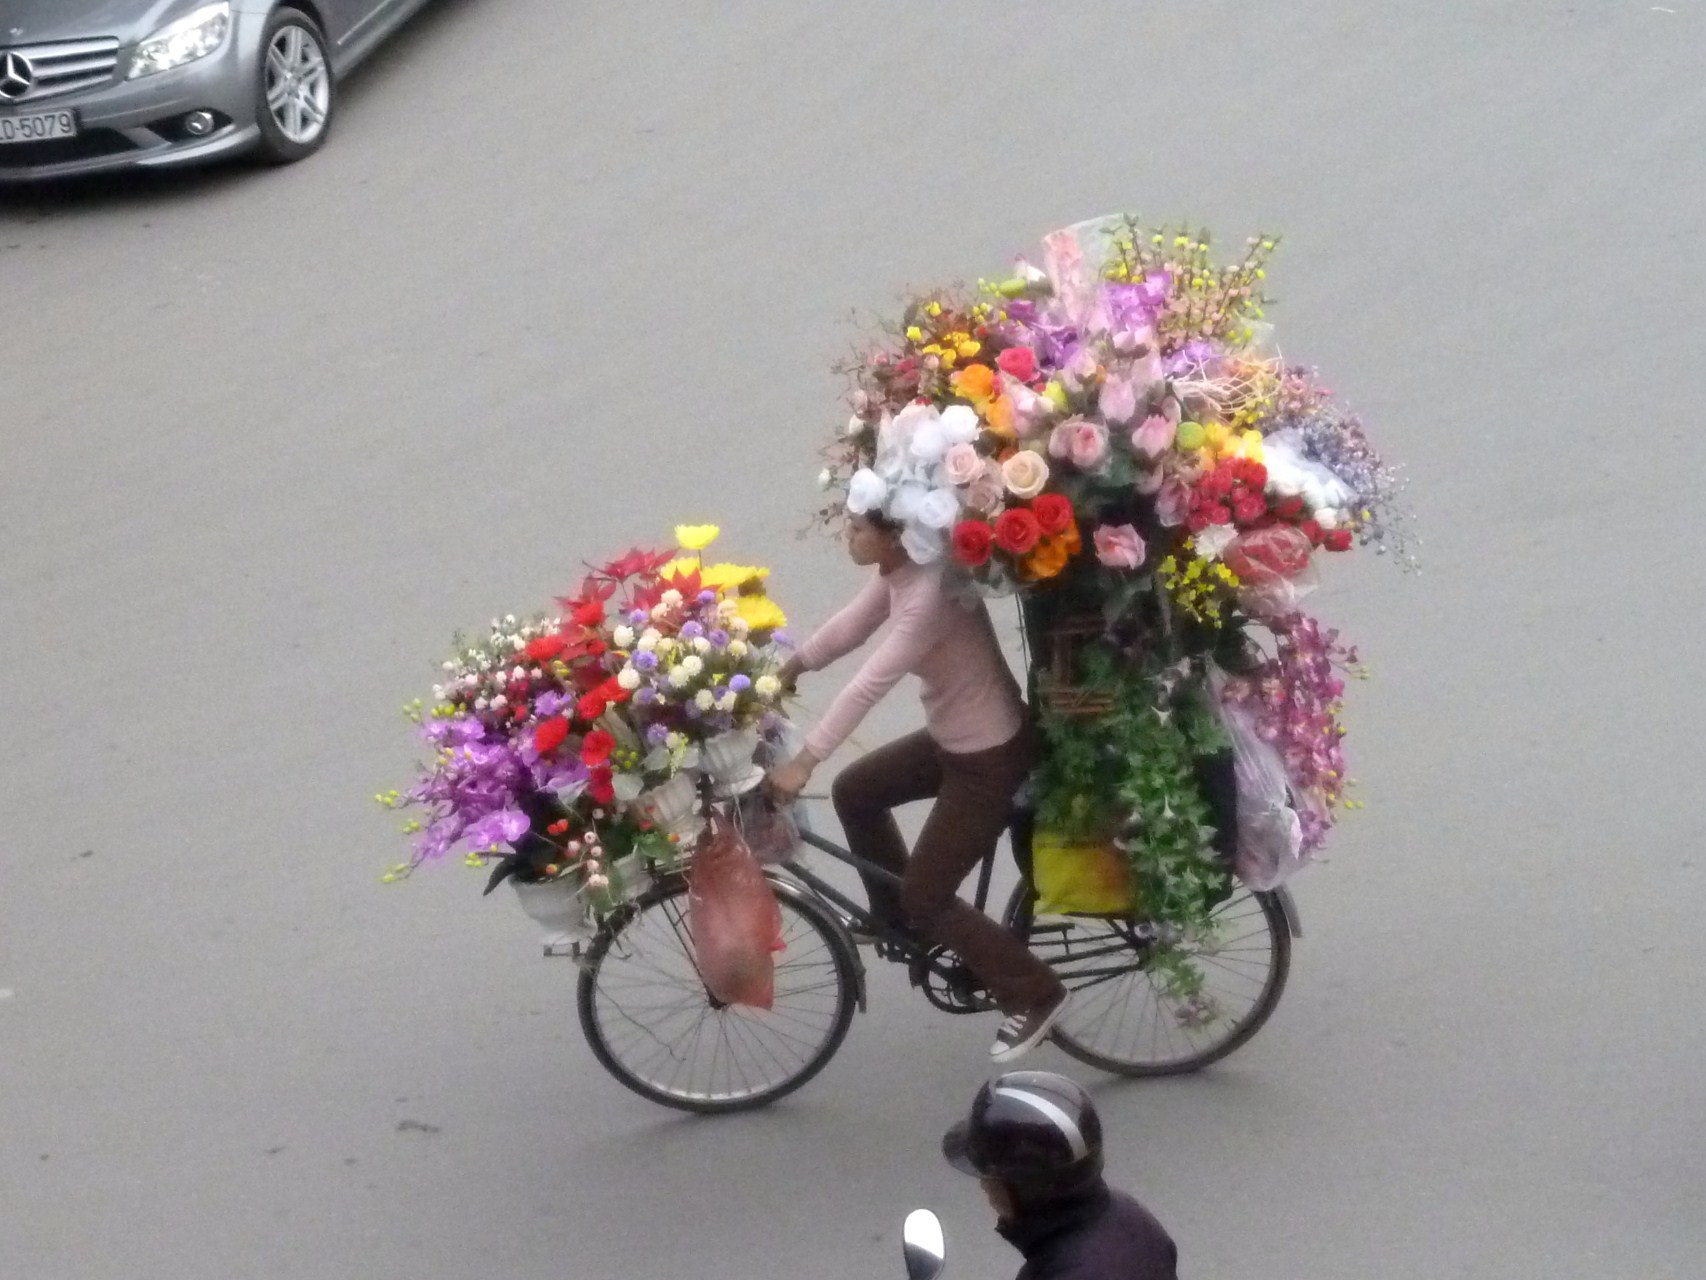 Flower seller on bike